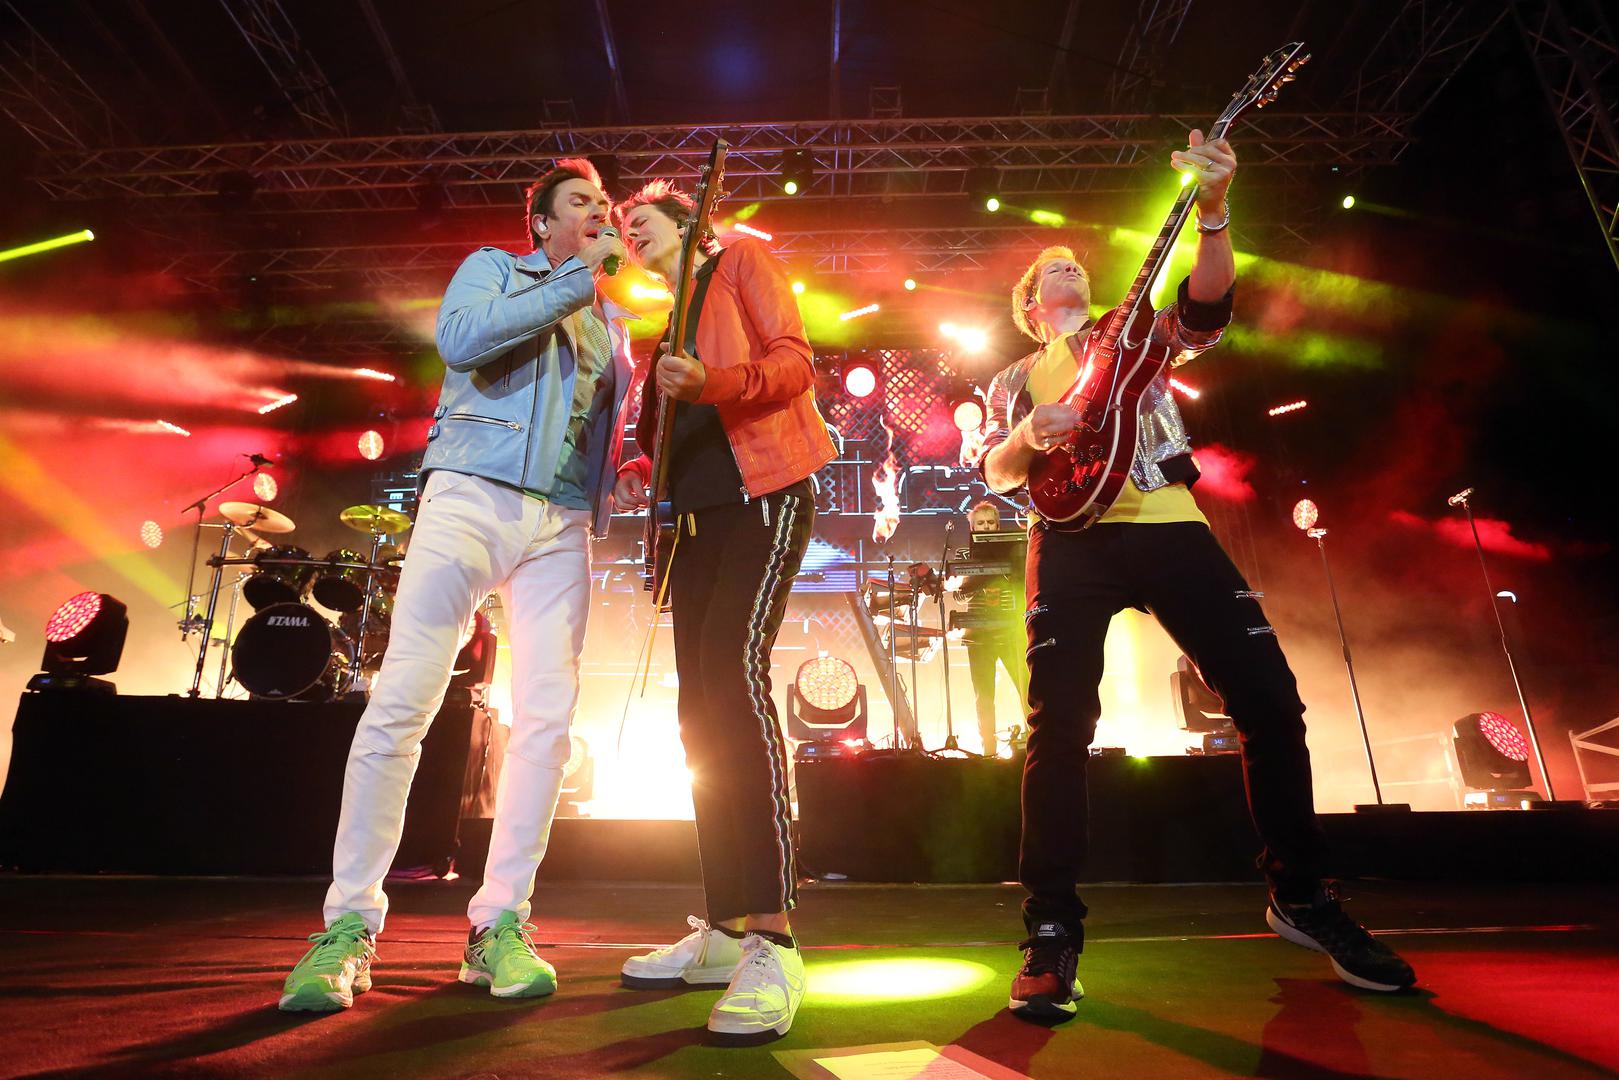  Duran Duran, bend koji je obilježio glazbenu scenu osamdesetih godina, predstavio je sinoć na Šalati svoj  14. album - "Paper Gods".